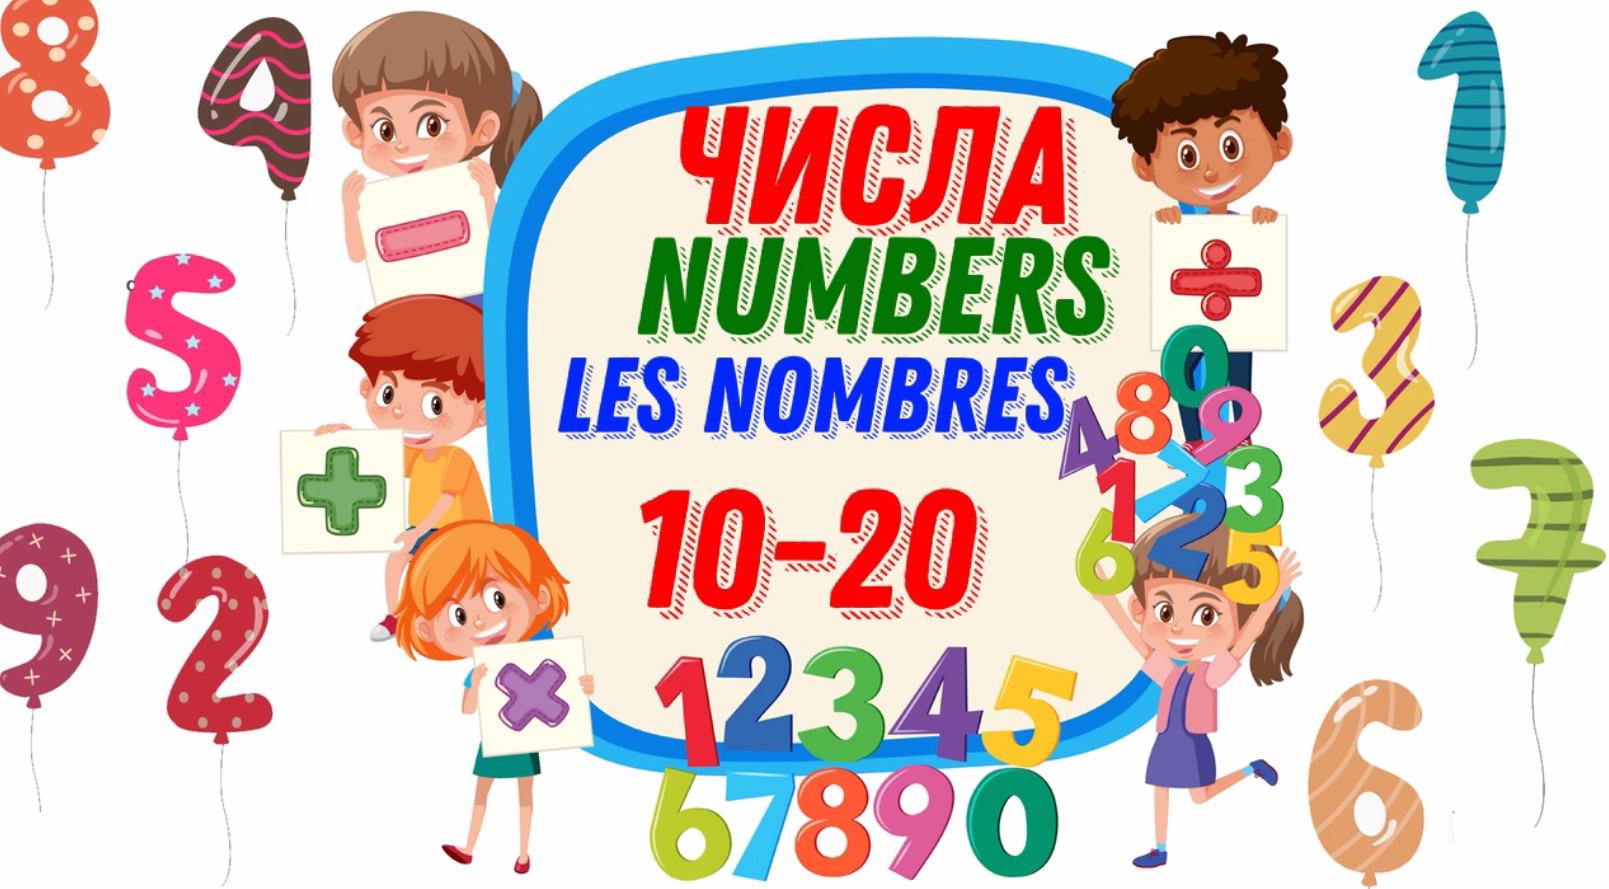 Цифры и числа РКИ. Numbers 10-20. Цифры до 20. Цифро-числовые логограмма. Видеть числа 10 10